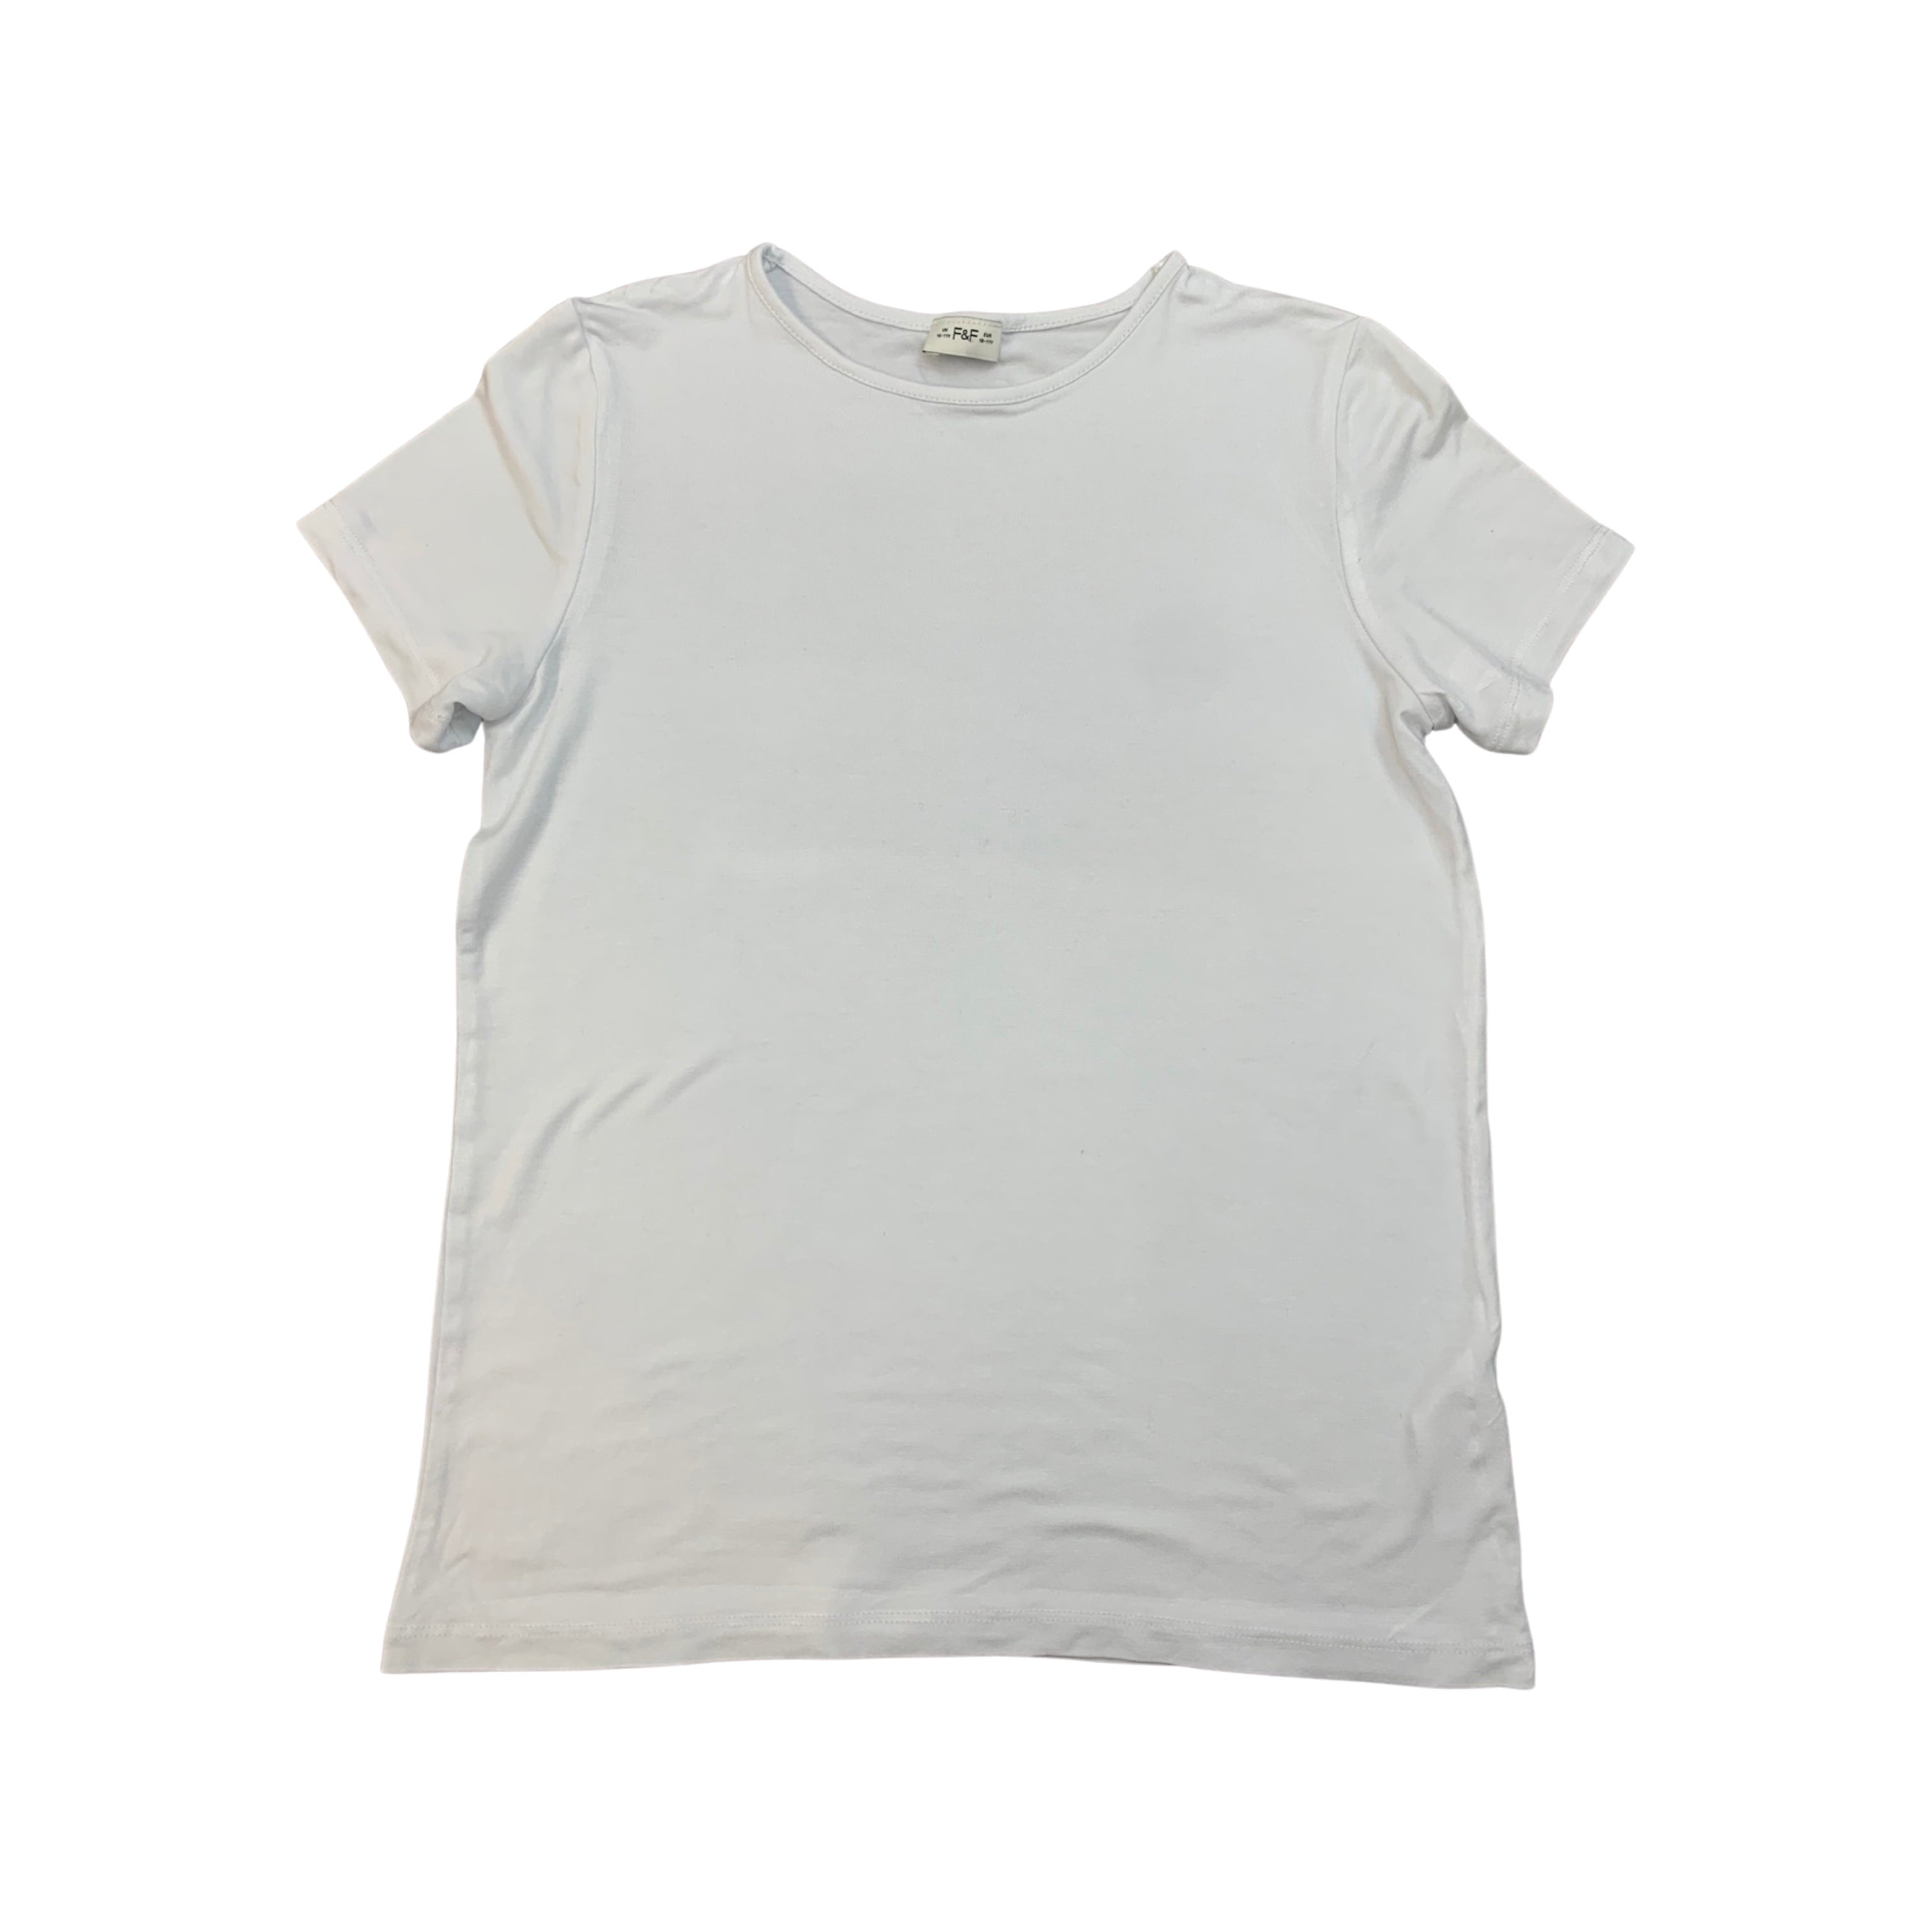 F&F Basic White T Shirt Girls 10-11 Years